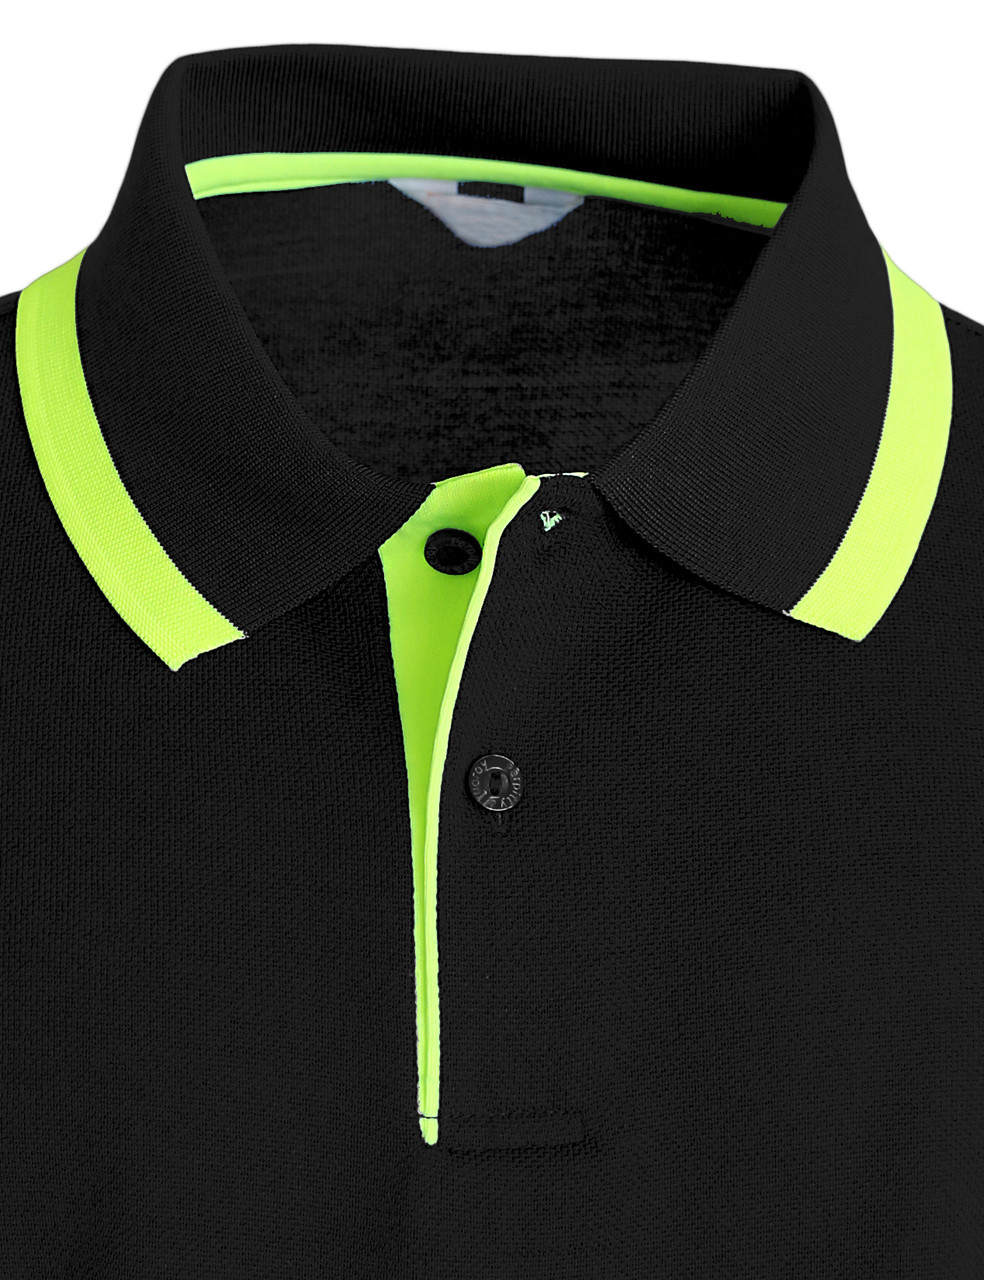 Racing Green Black Chilton Pique Polo Shirt